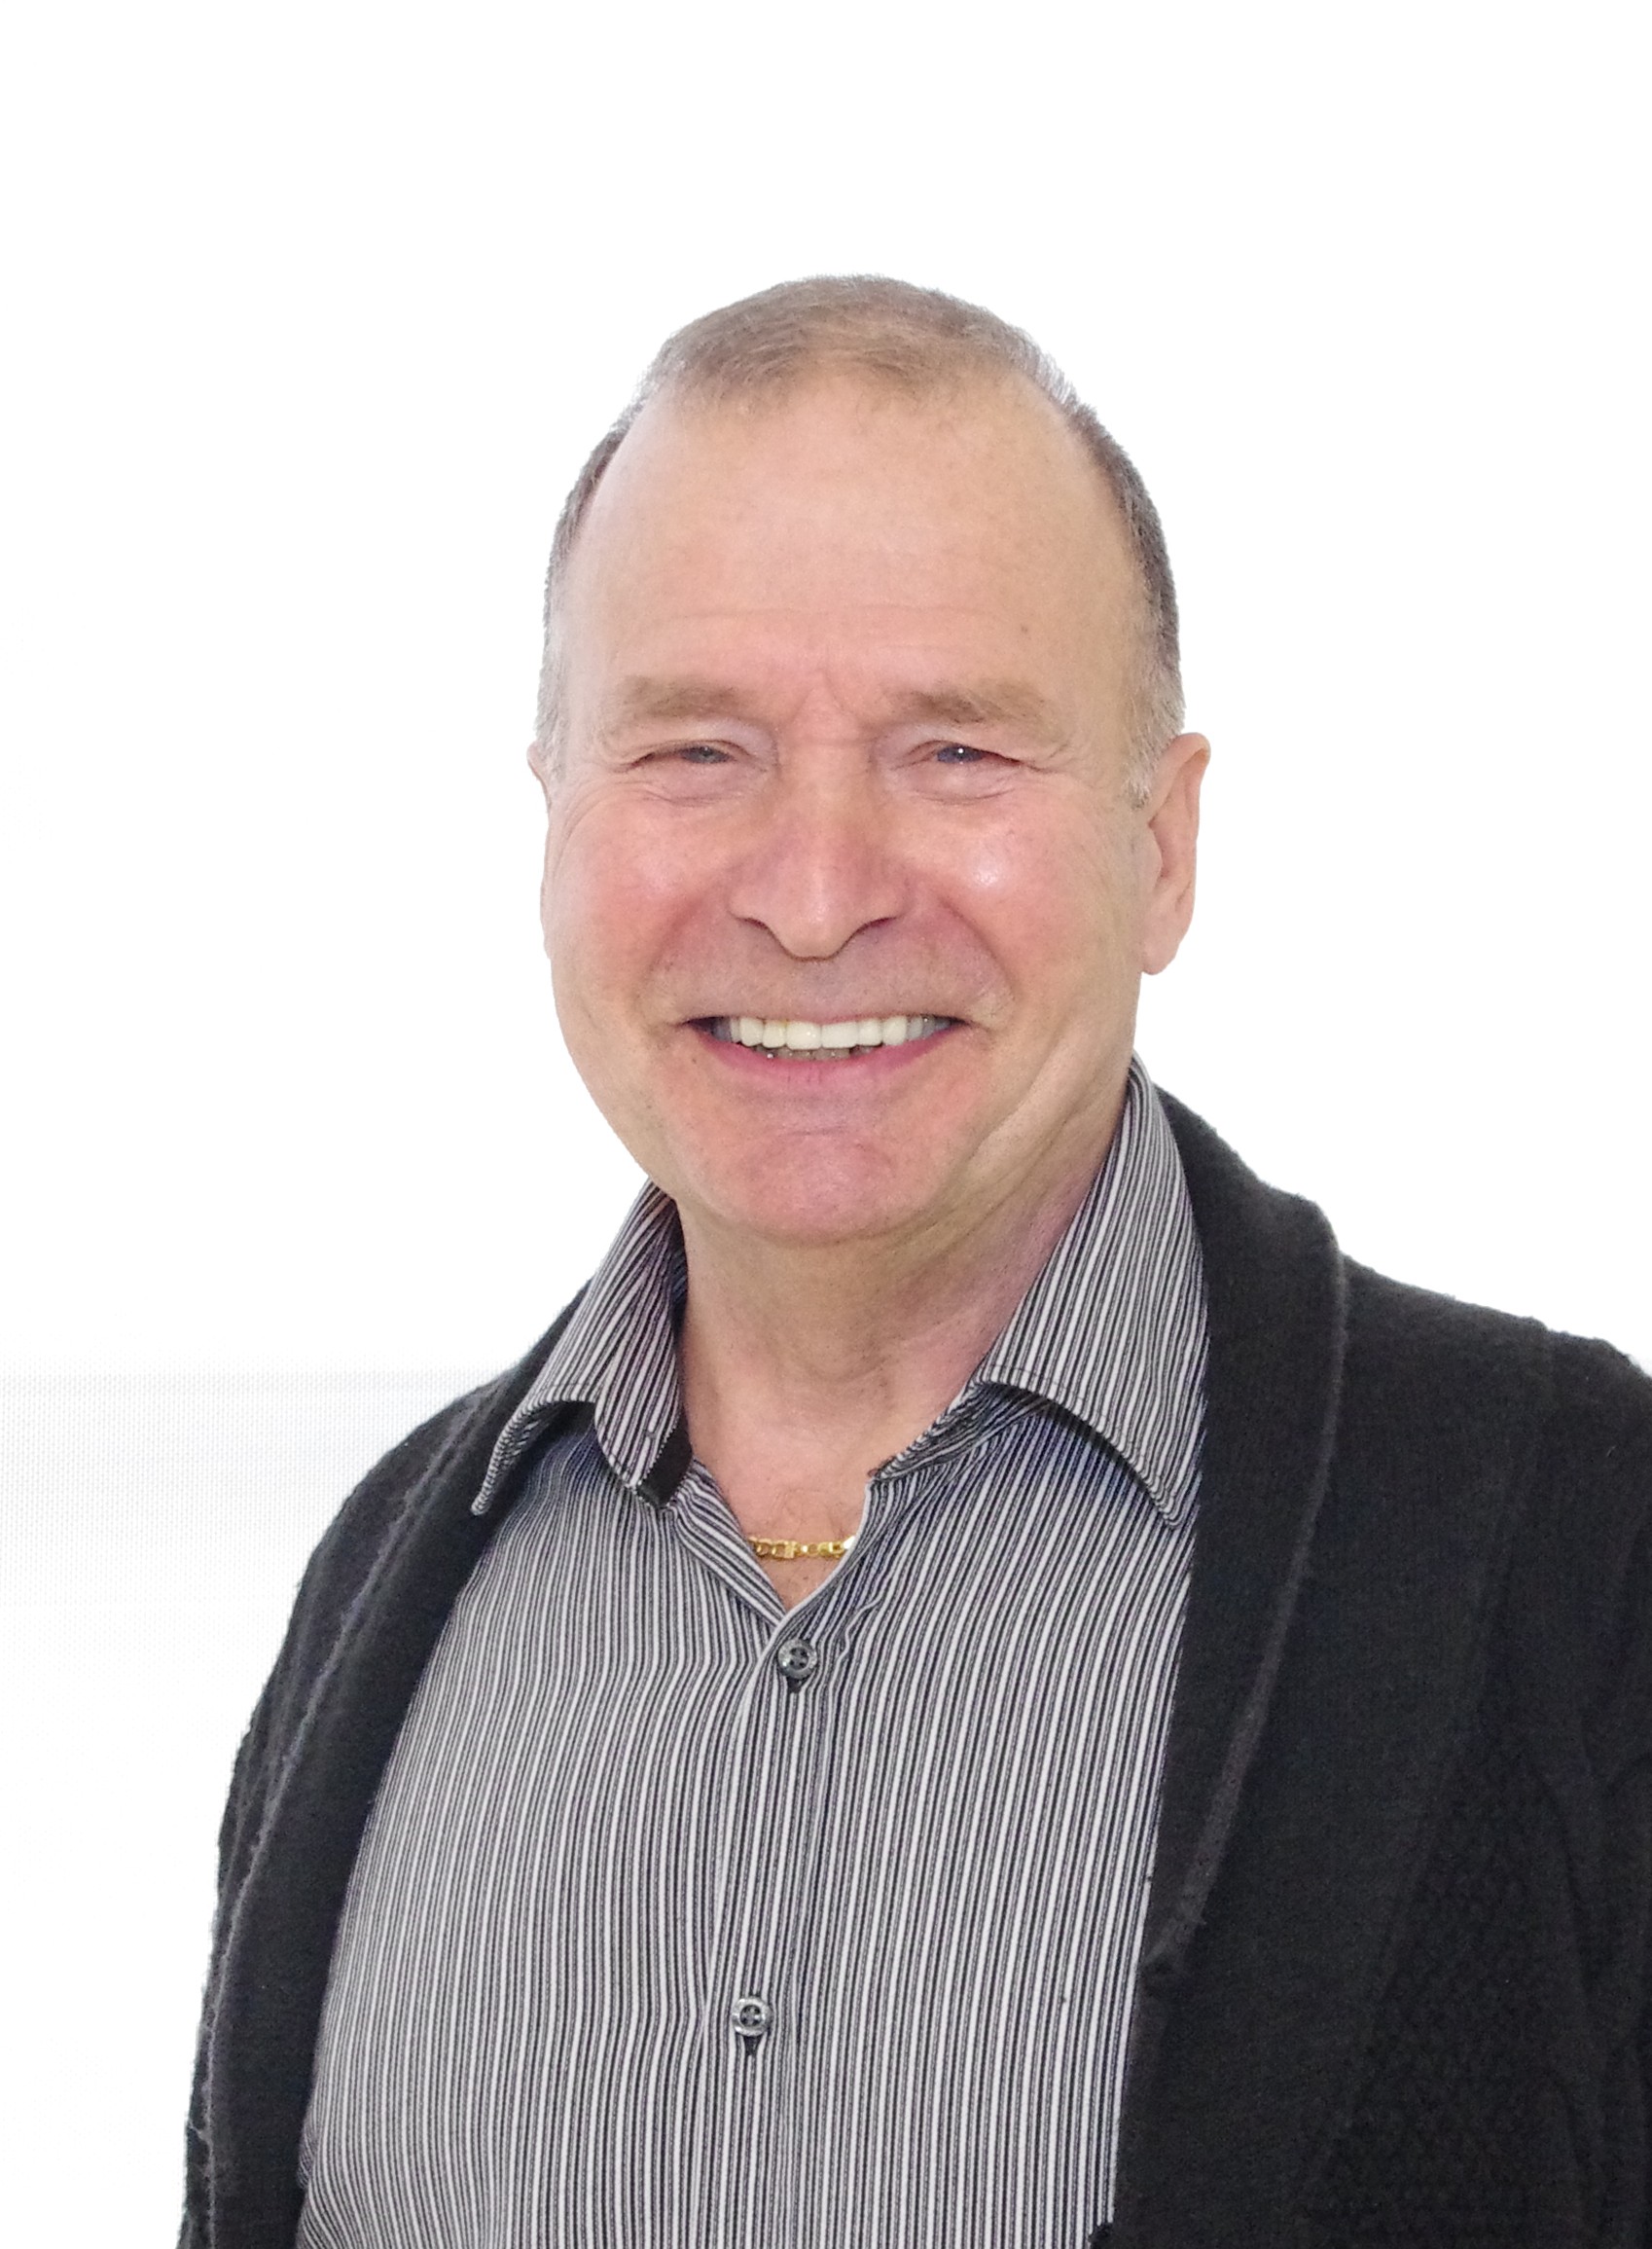 Marcel Devin - Mentor d'entrepreneurs pour la région nord du Québec - Centre d'entrepreneurship nordique